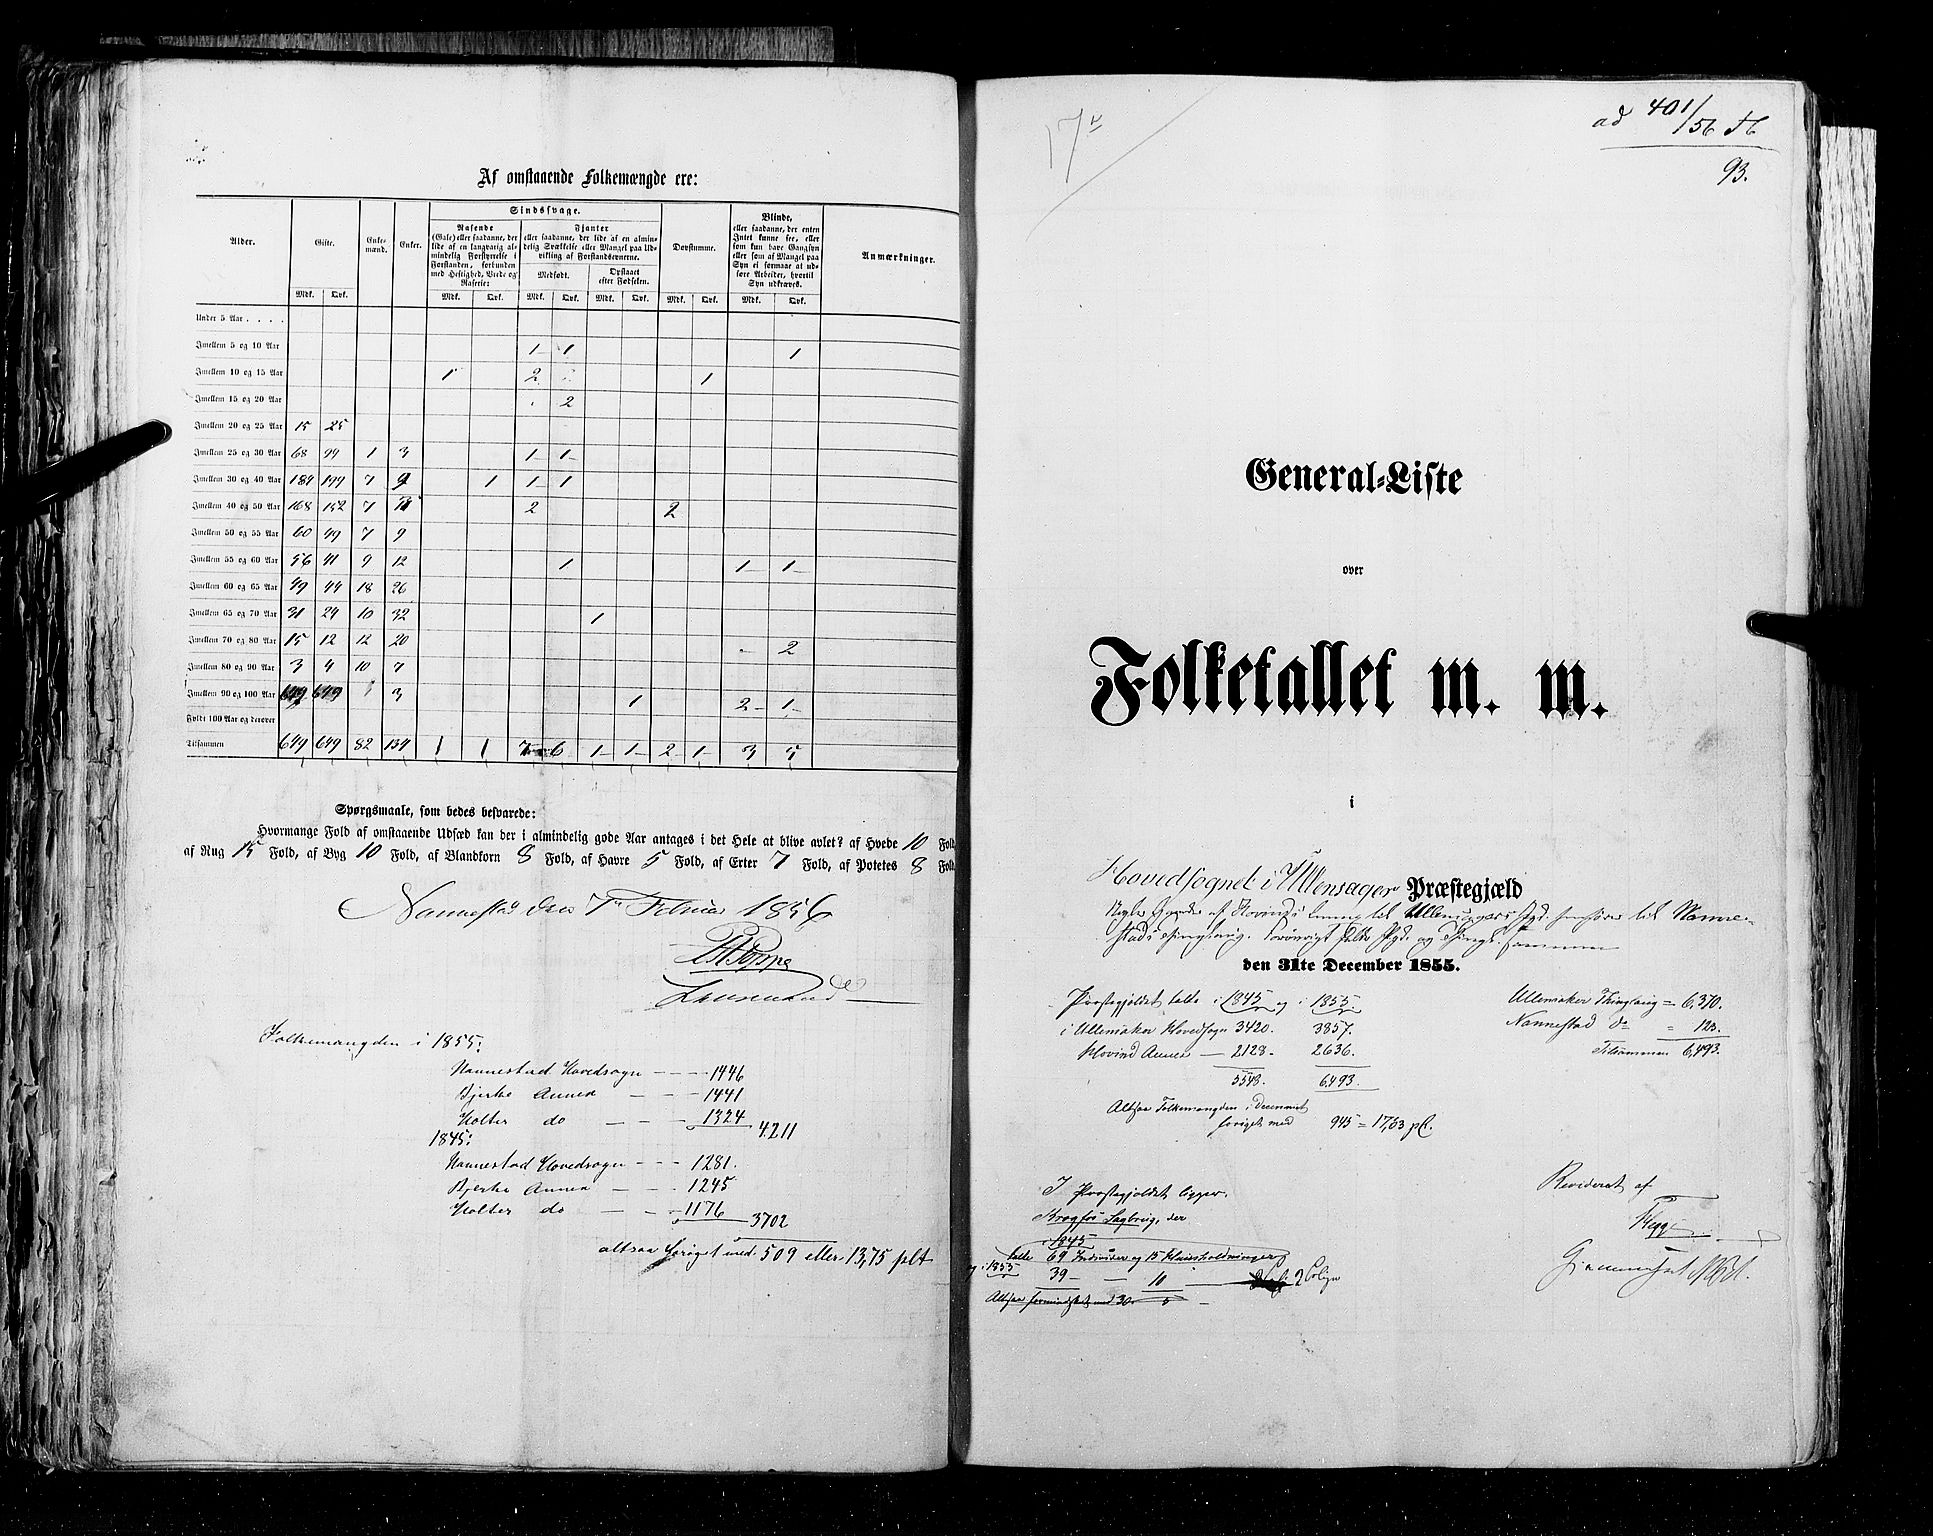 RA, Census 1855, vol. 1: Akershus amt, Smålenenes amt og Hedemarken amt, 1855, p. 93